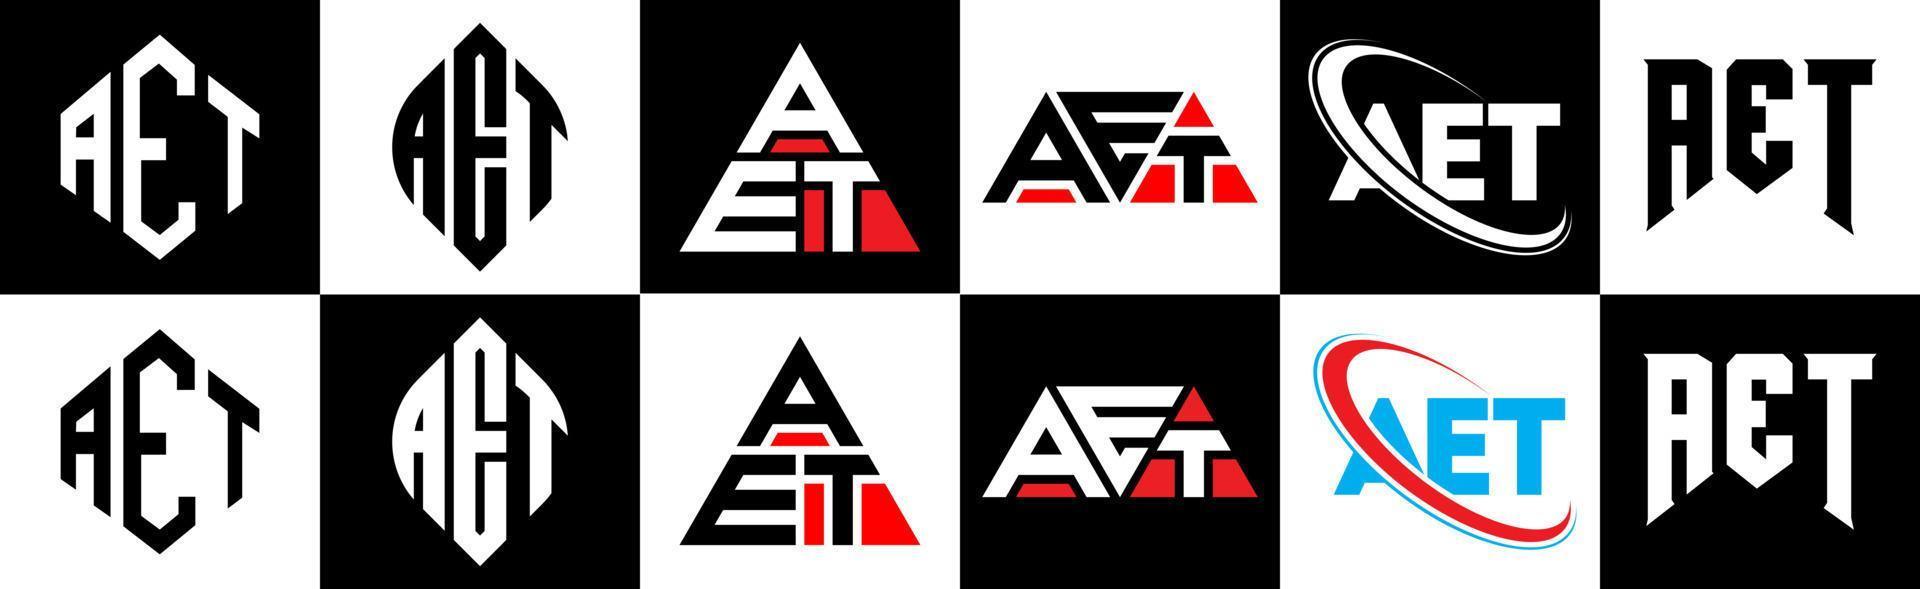 aet-Buchstaben-Logo-Design in sechs Stilen. aet polygon, kreis, dreieck, hexagon, flacher und einfacher stil mit schwarz-weißem farbvariationsbuchstabenlogo in einer zeichenfläche. ein minimalistisches und klassisches Logo vektor